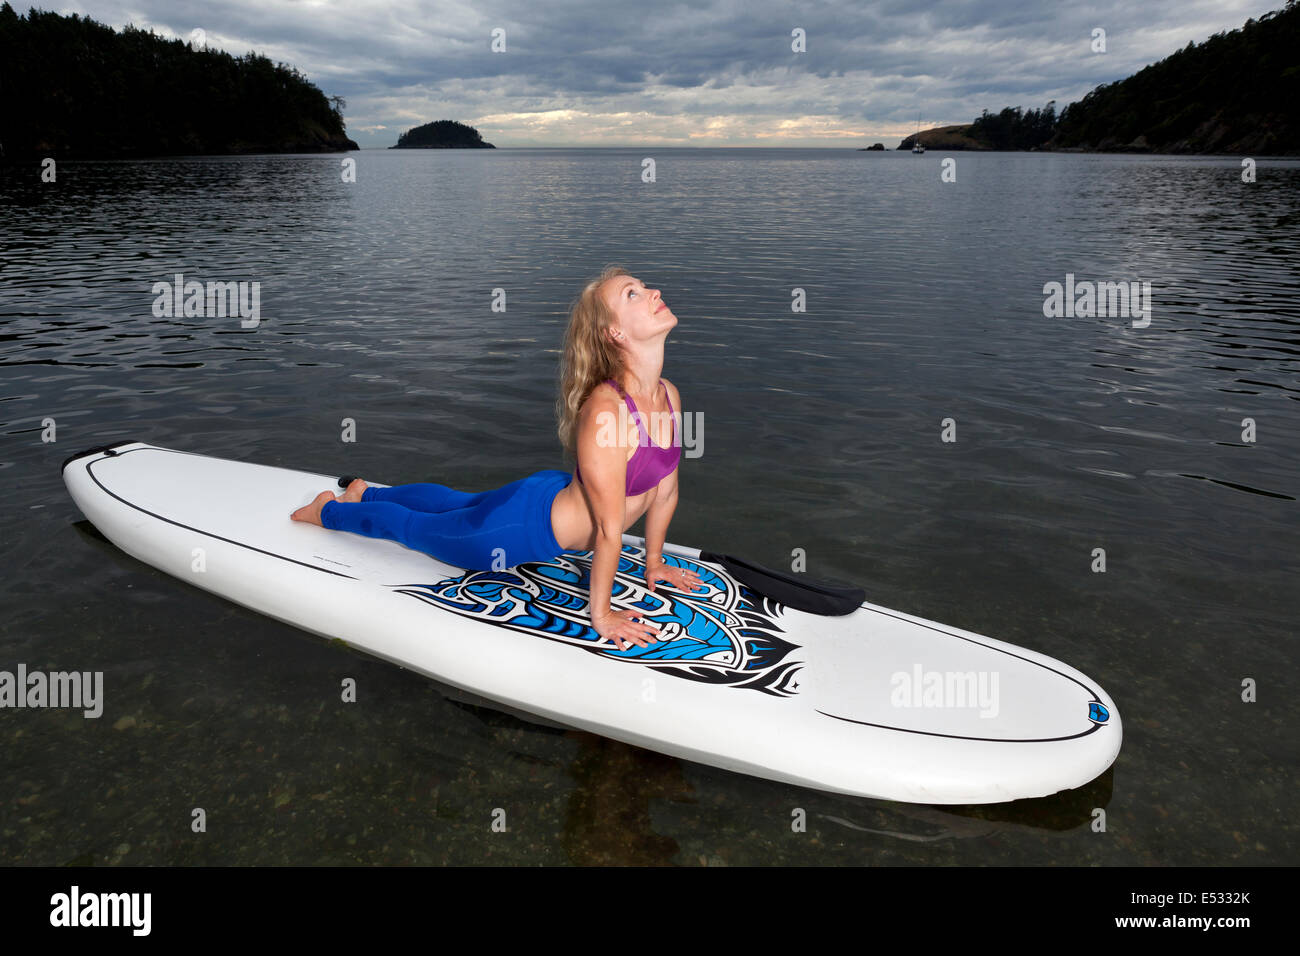 WASHINGTON - Professeur de Yoga Carly Hayden se réchauffer sur un, SUP (stand up paddle board), dans la région de Bowman Bay. Banque D'Images